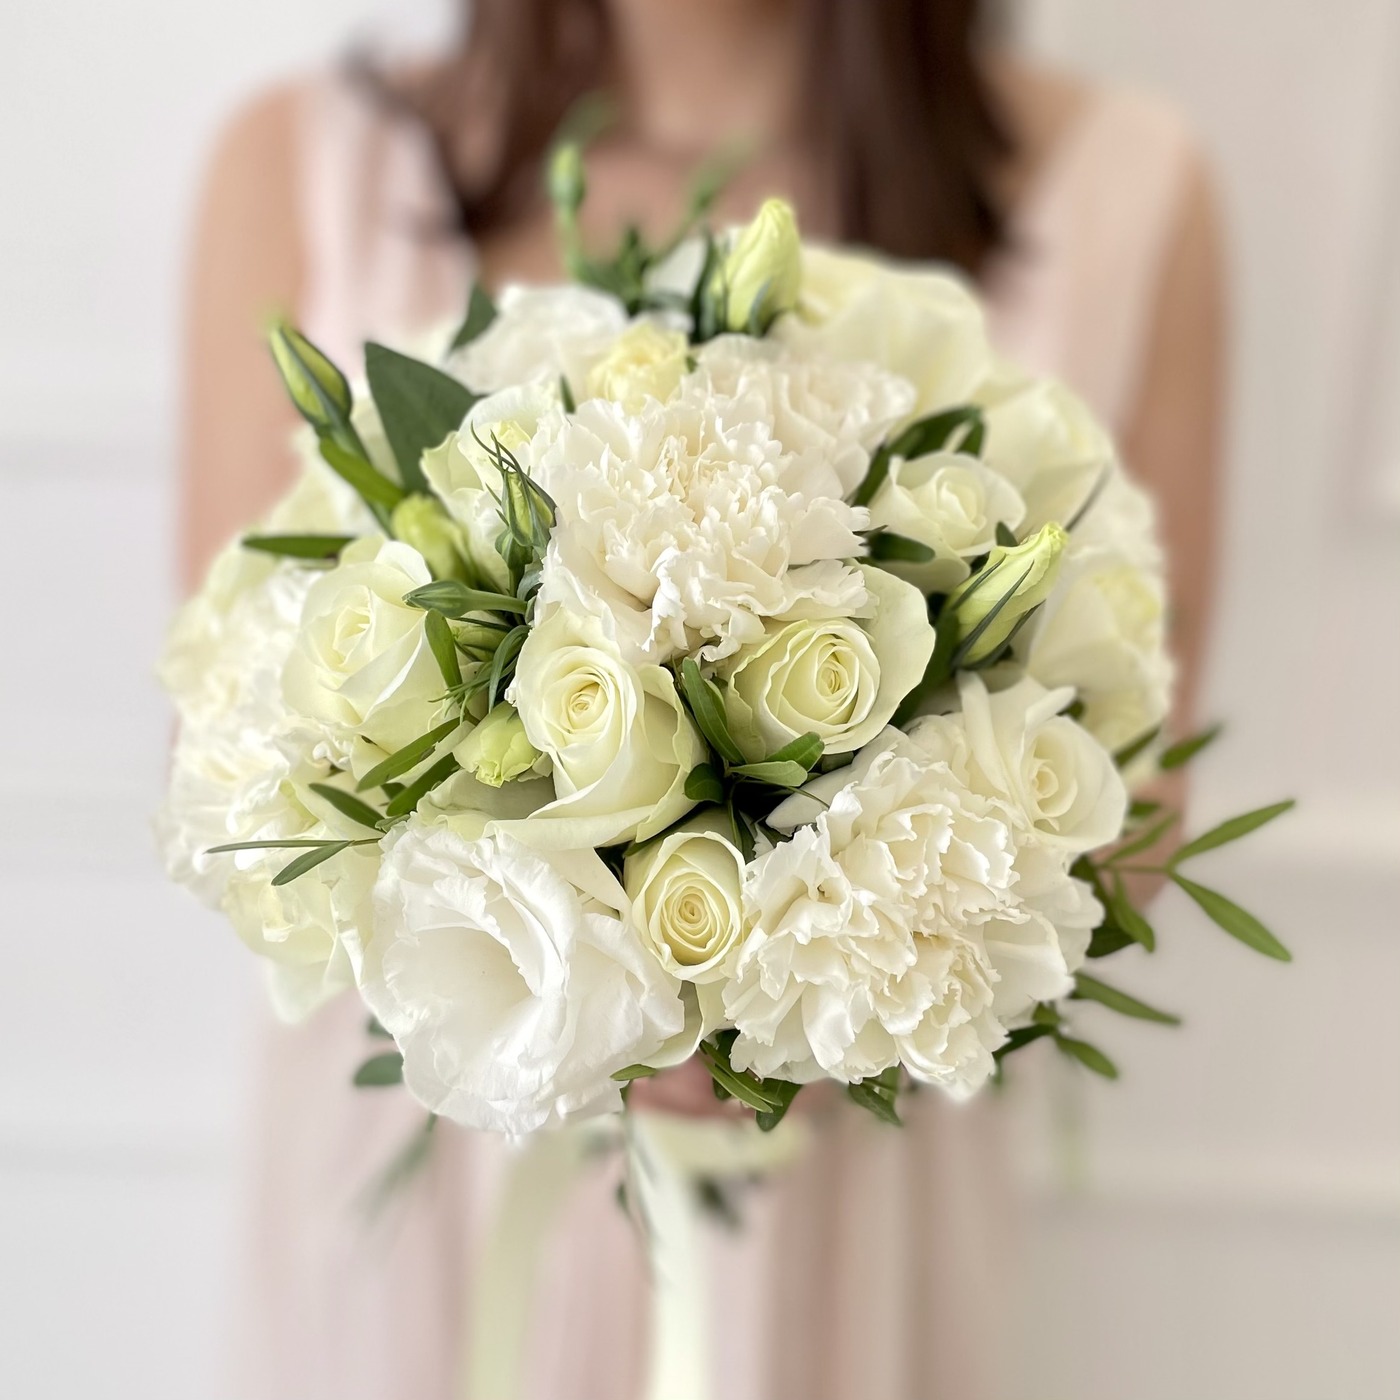 Купить букет до 3000 руб из белых роз на свадьбу с доставкой по Москве и области